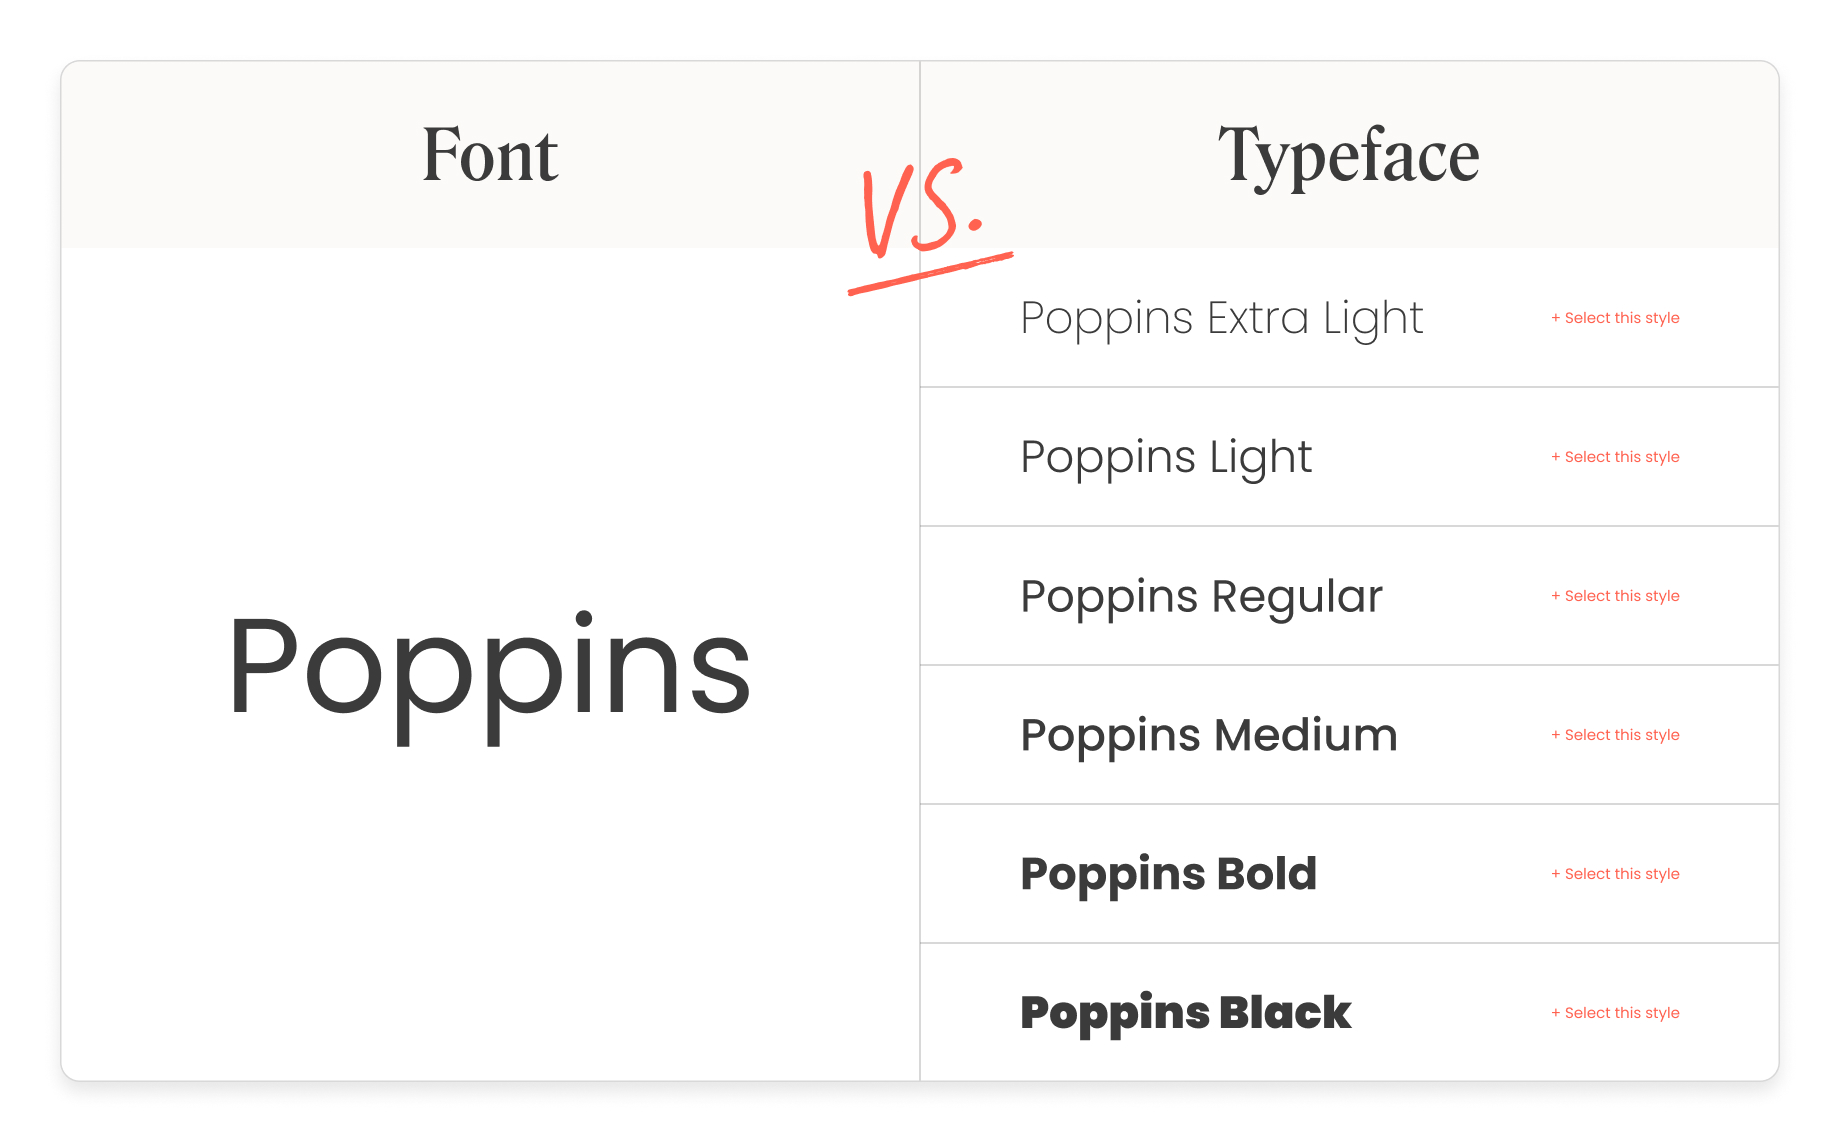 Typeface vs. font